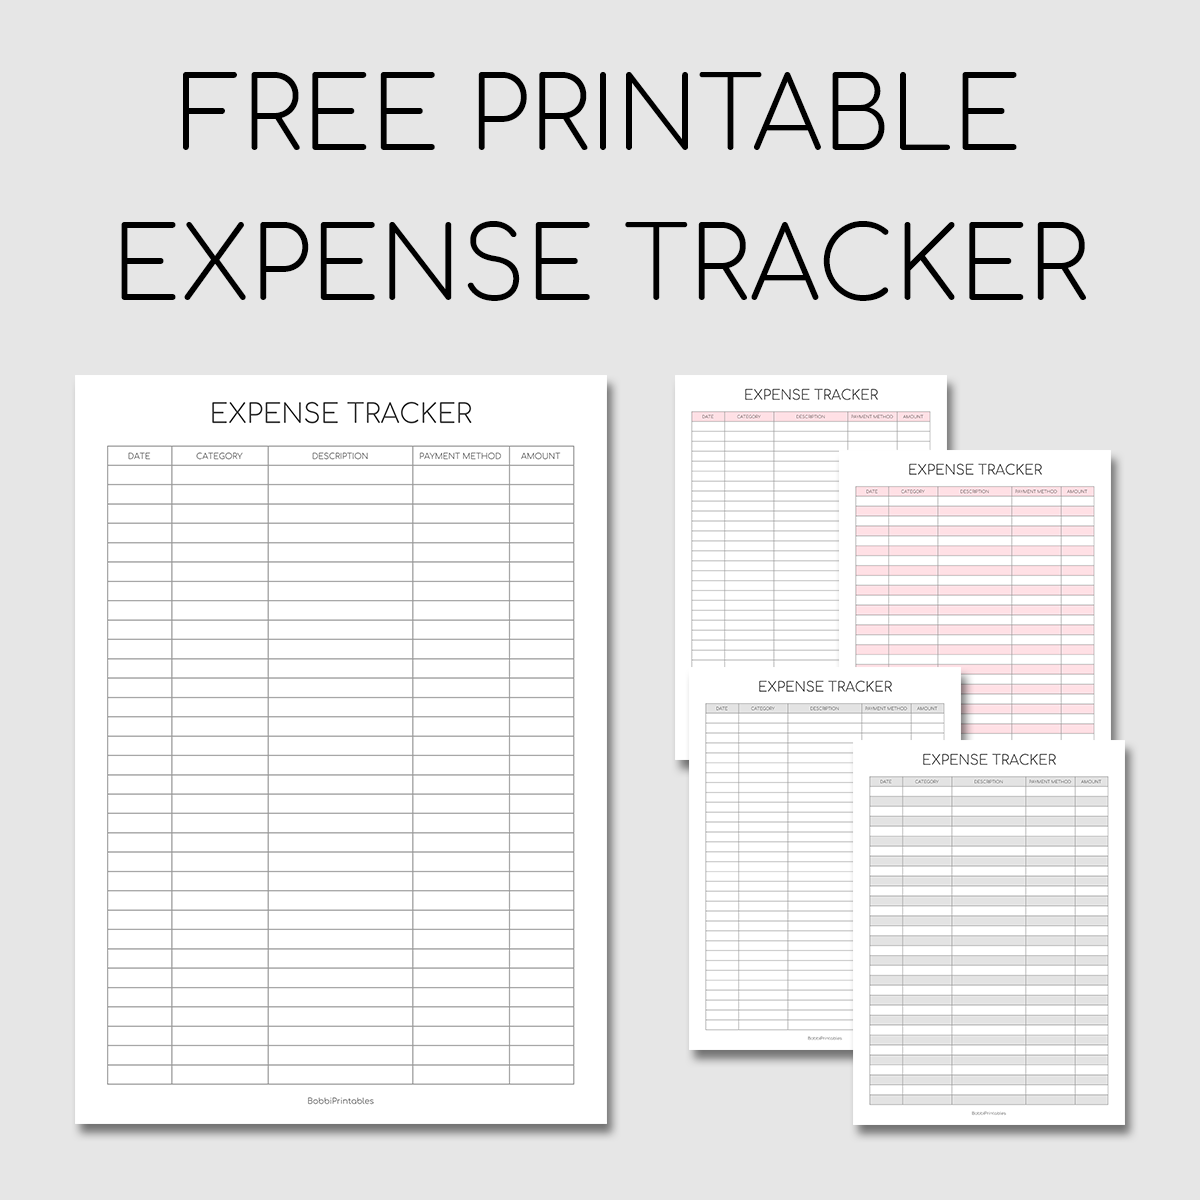 Free Printable Weekly Spending Tracker